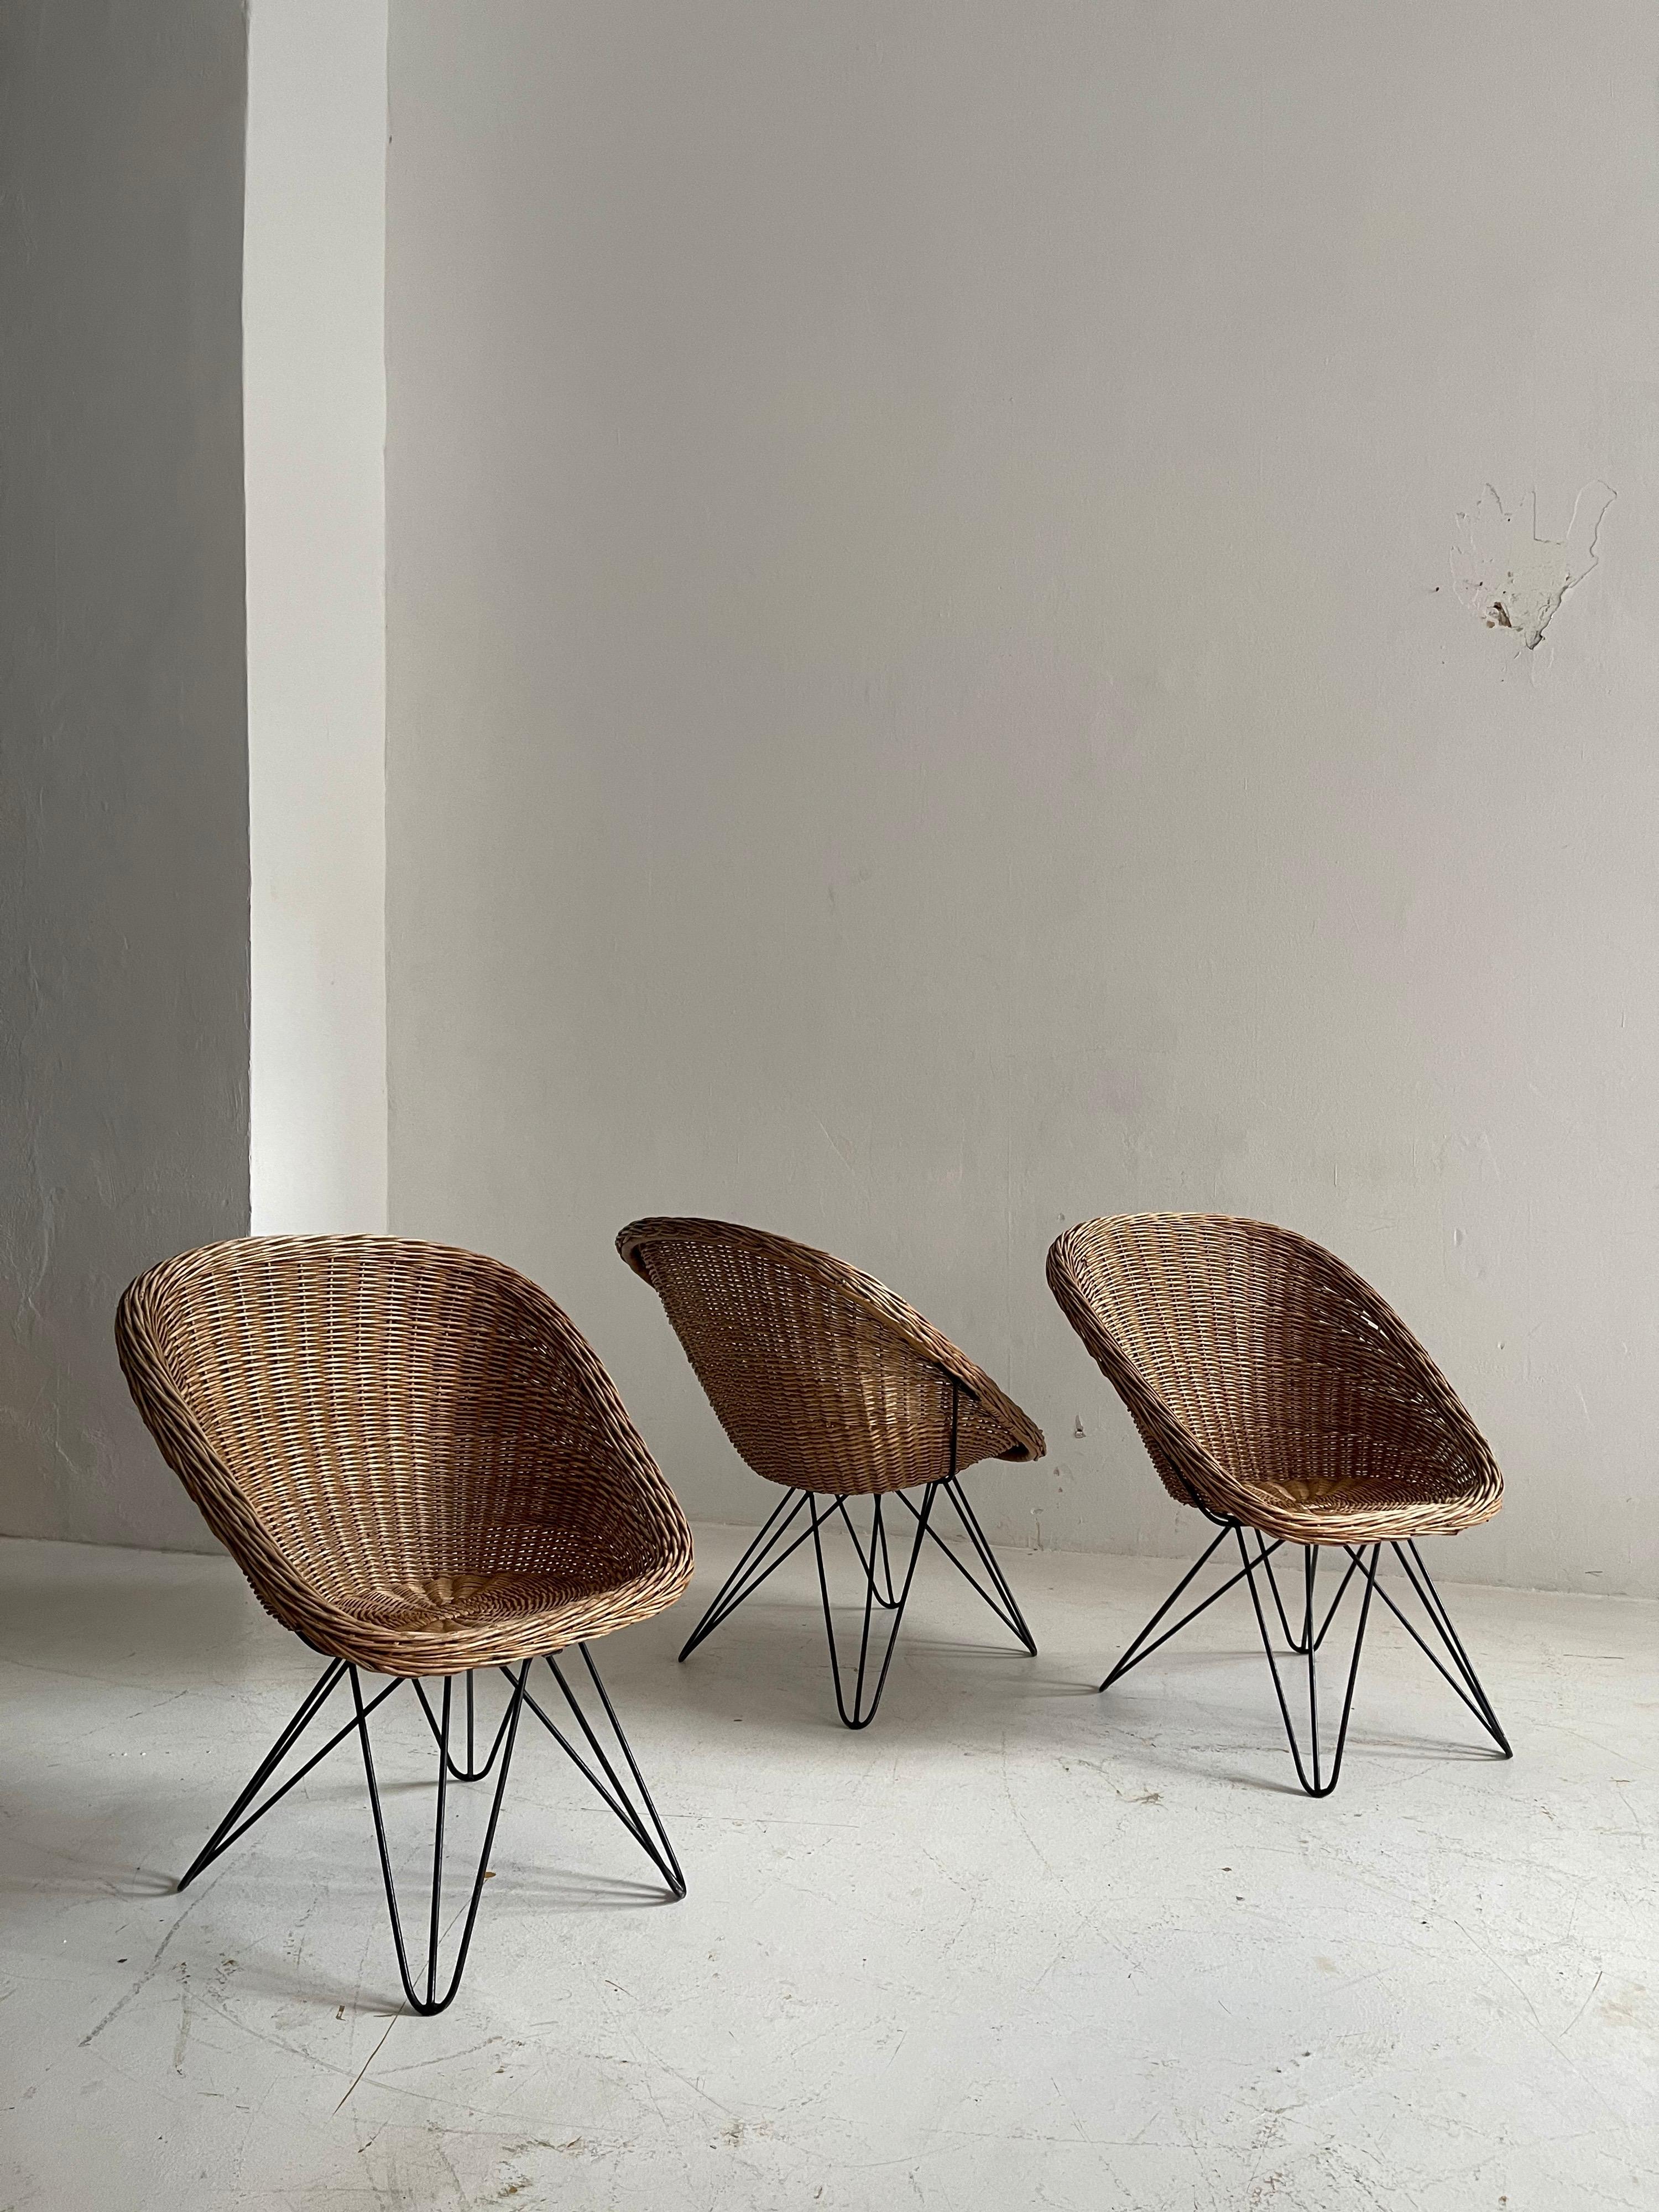 Barrel Wicker Lounge Chairs by Sonett, Austria, 1950s For Sale 1